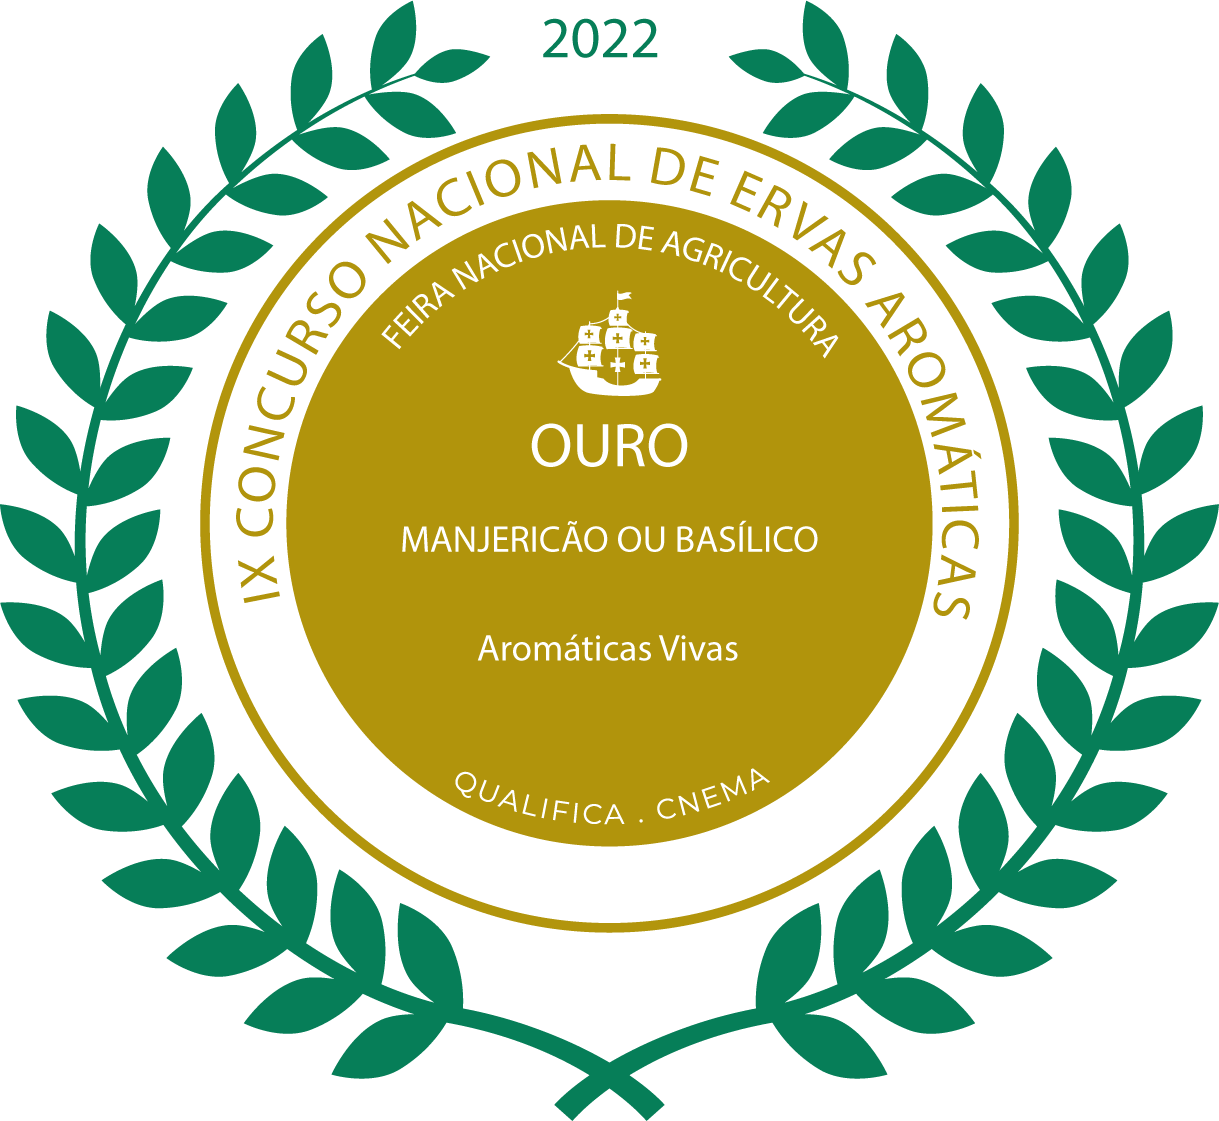 Ouro Manjericão 2022